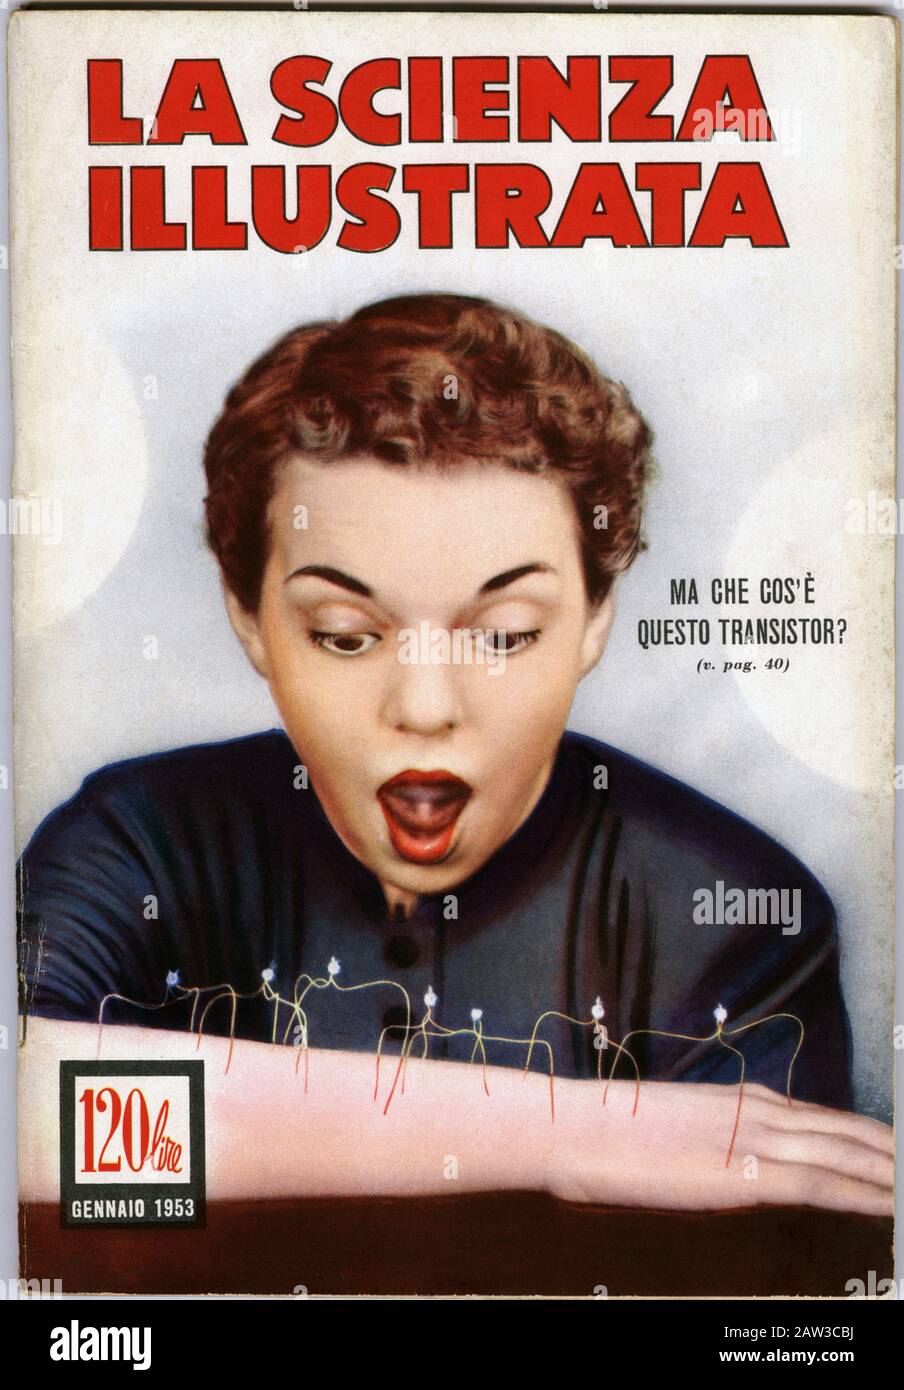 1953, ITALIEN: Cover der italienischen Illustrierten Zeitschrift LA SCIENZA ILLUSTRATA ( The Illustrated Science ), januar 1953, gewidmet der Erfindung des Rundfunks Stockfoto